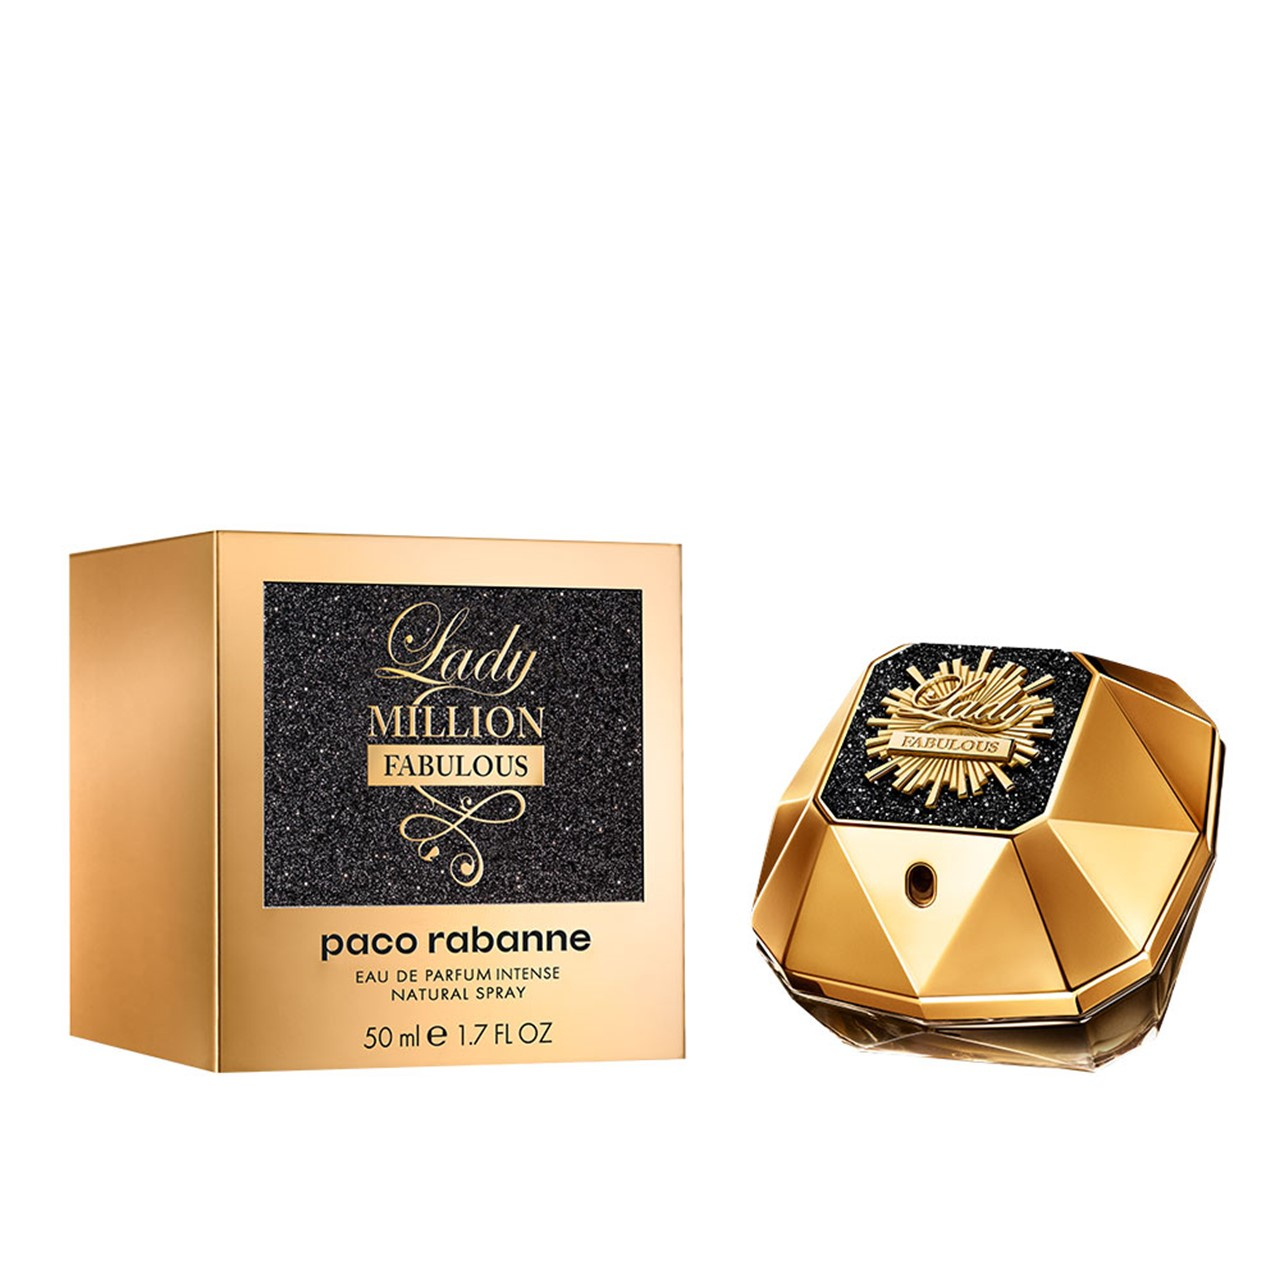 Paco Rabanne Lady Million Fabulous Eau de Parfum Intense 50ml (1.7fl oz)